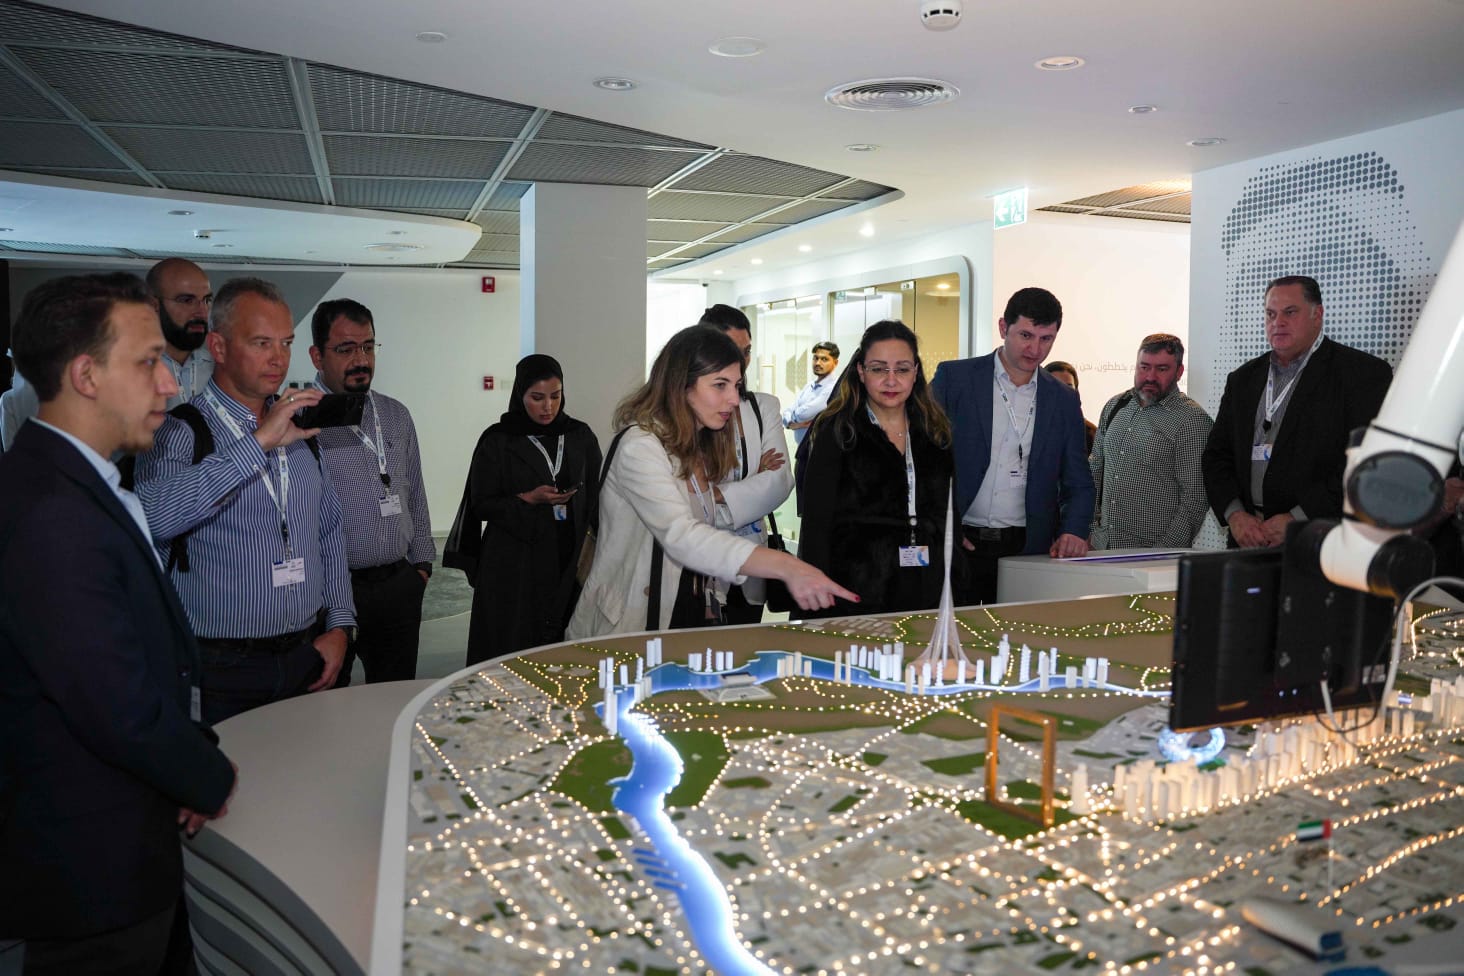 المشاركون في منتدى دبي العالمي لإدارة المشاريع يزورون معالم دبي